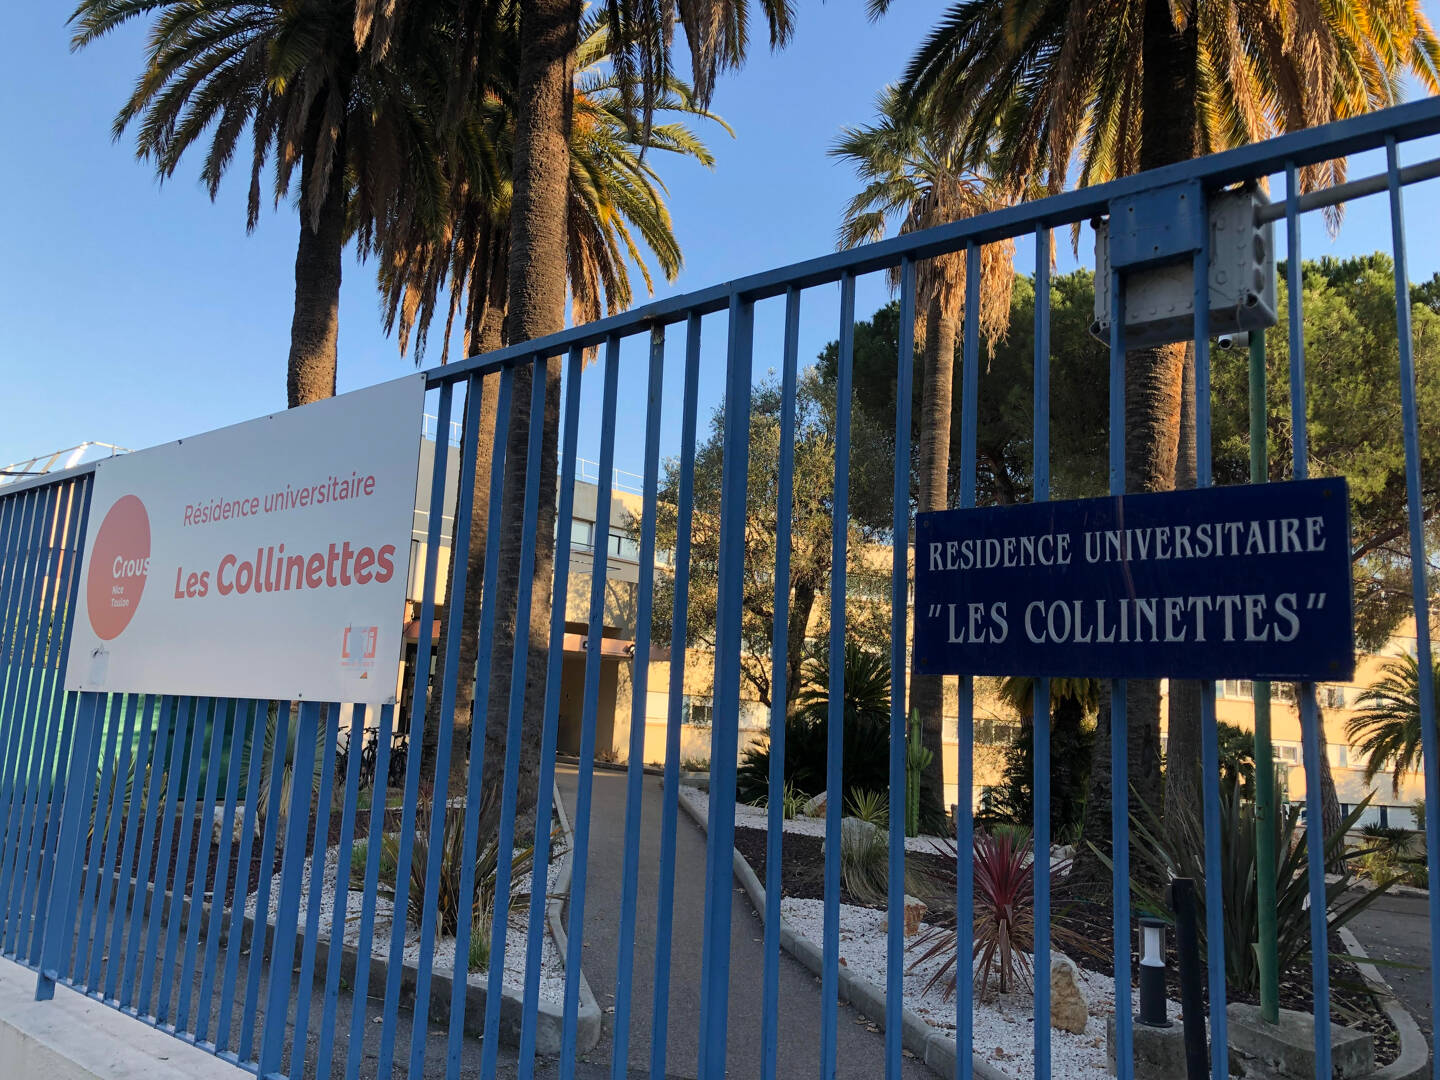 Un homme est actuellement recherché par la police, pour des faits présumés d’agressions sexuelles, depuis le début de l’année, aux abords de l’université de Droit de Nice.